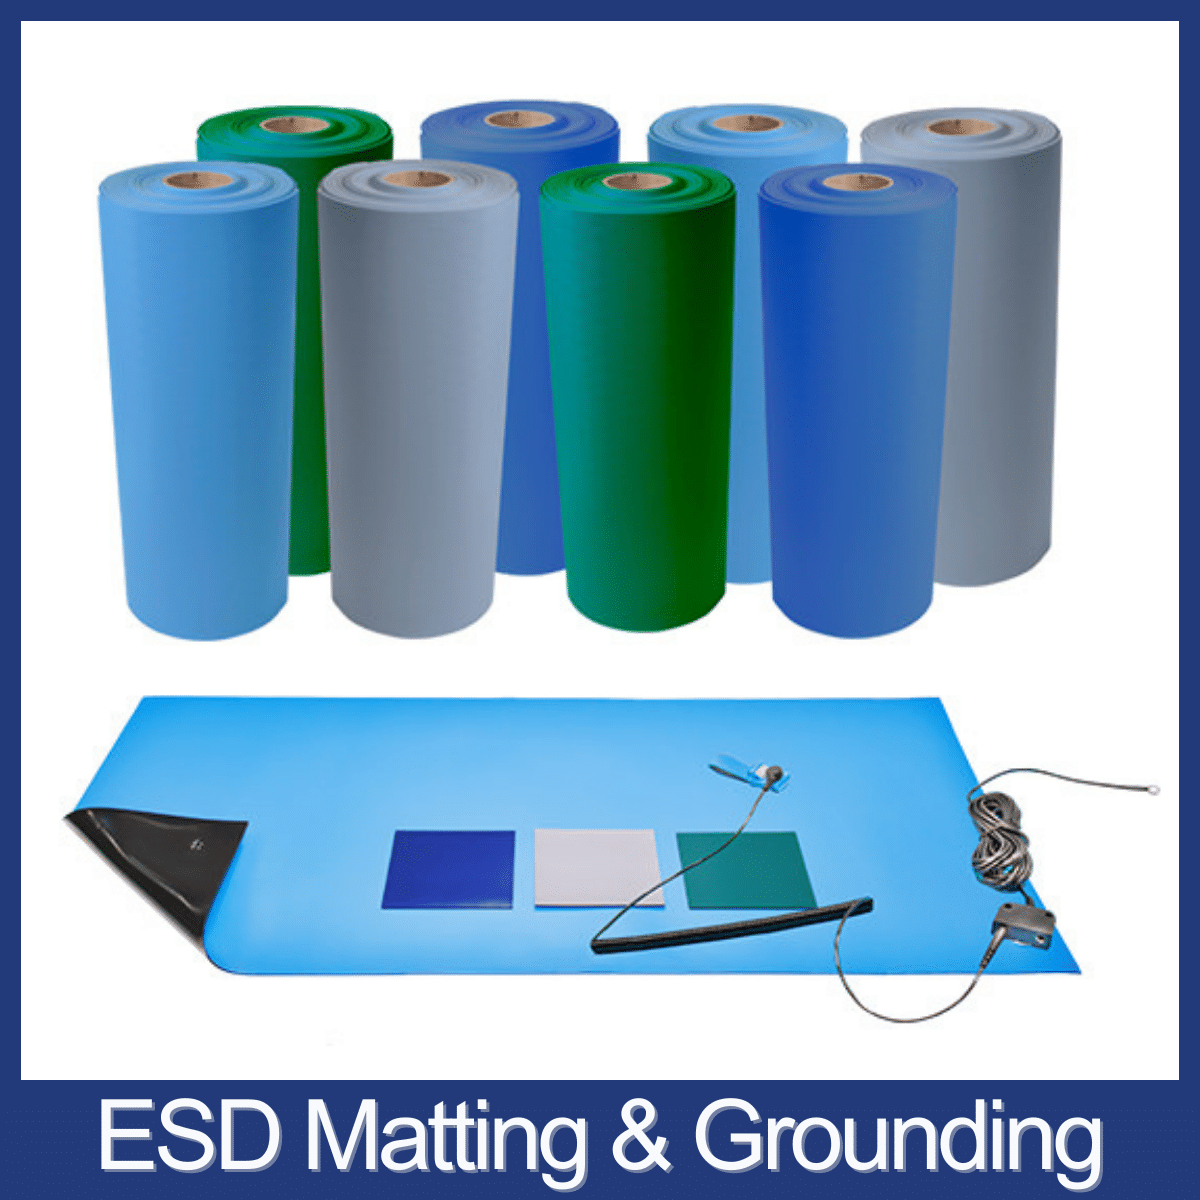 ESD Matting and Grounding